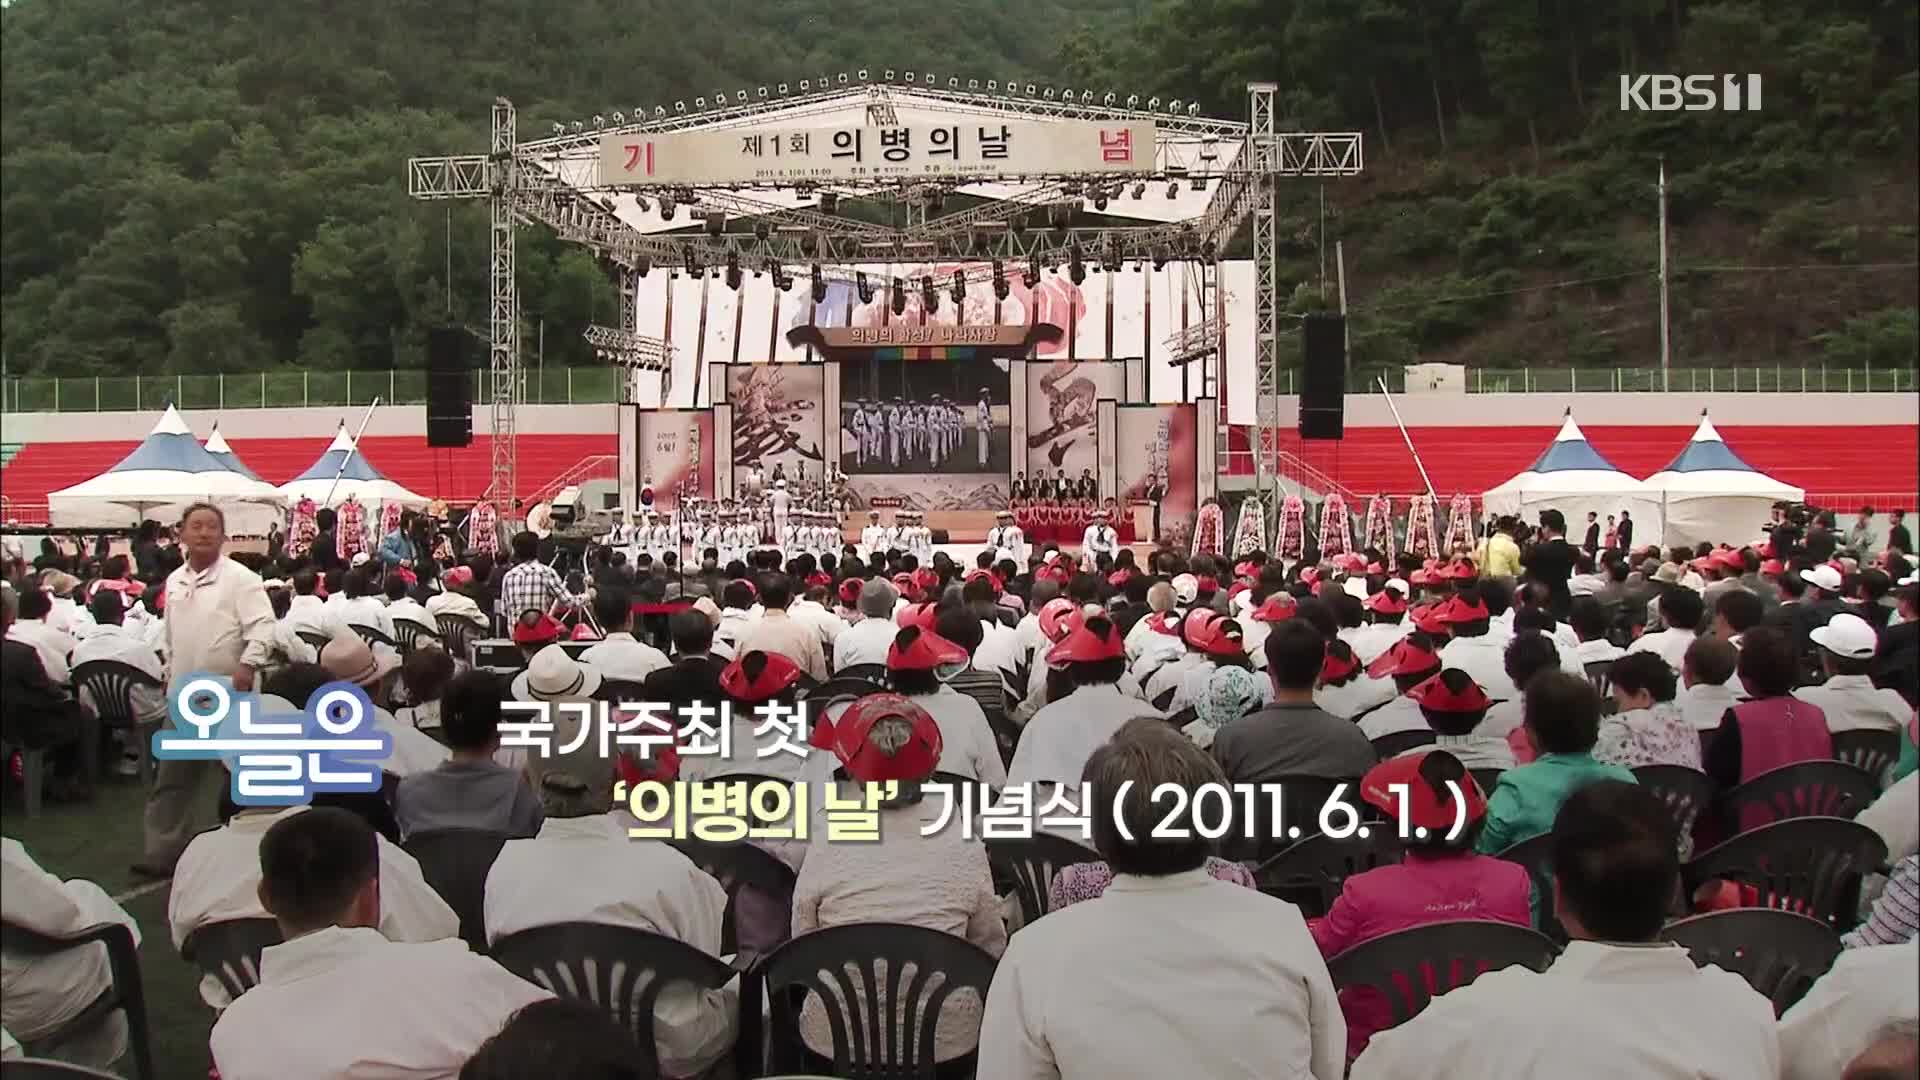 [오늘은] 국가주최 첫 ‘의병의 날’ 기념식 (2011. 6. 1.)